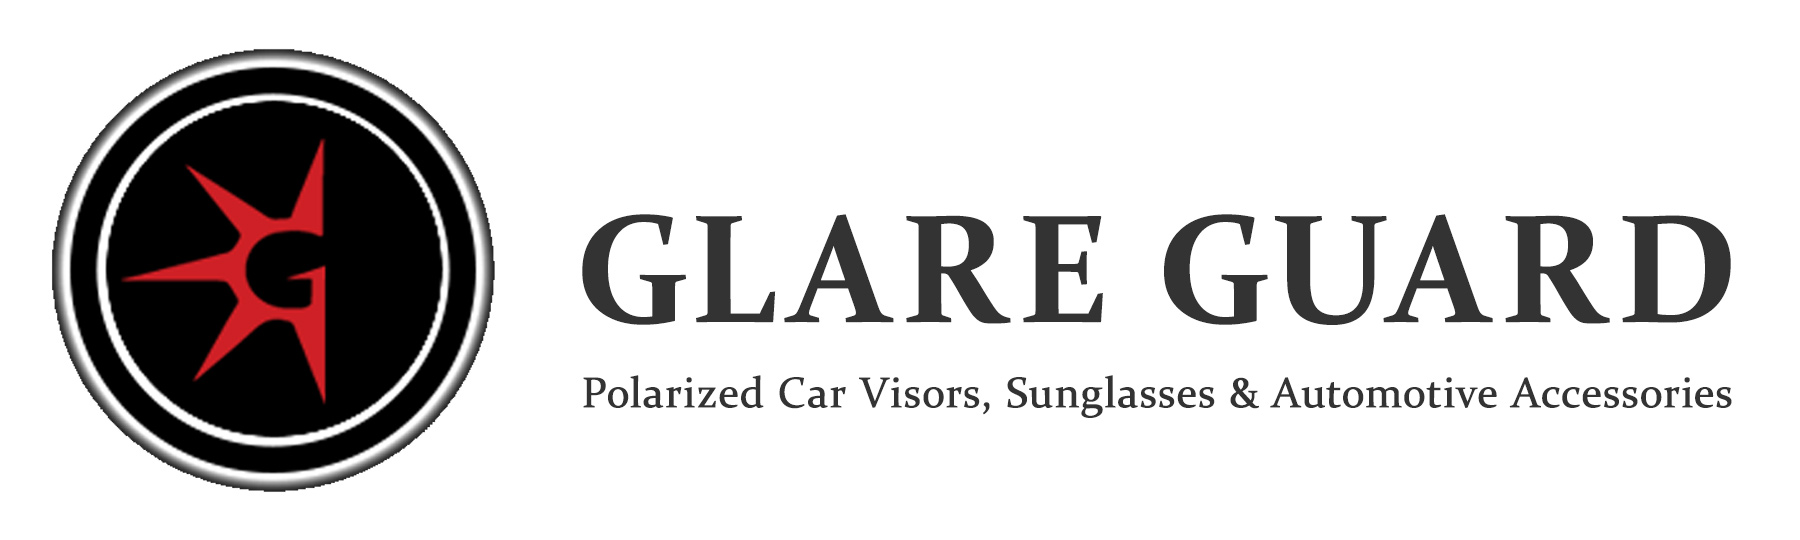 Glare Guard グレアガード 車用 偏光サンバイザー ワイドサイズ 35 6cm 8 3cm パワーバリュー本舗